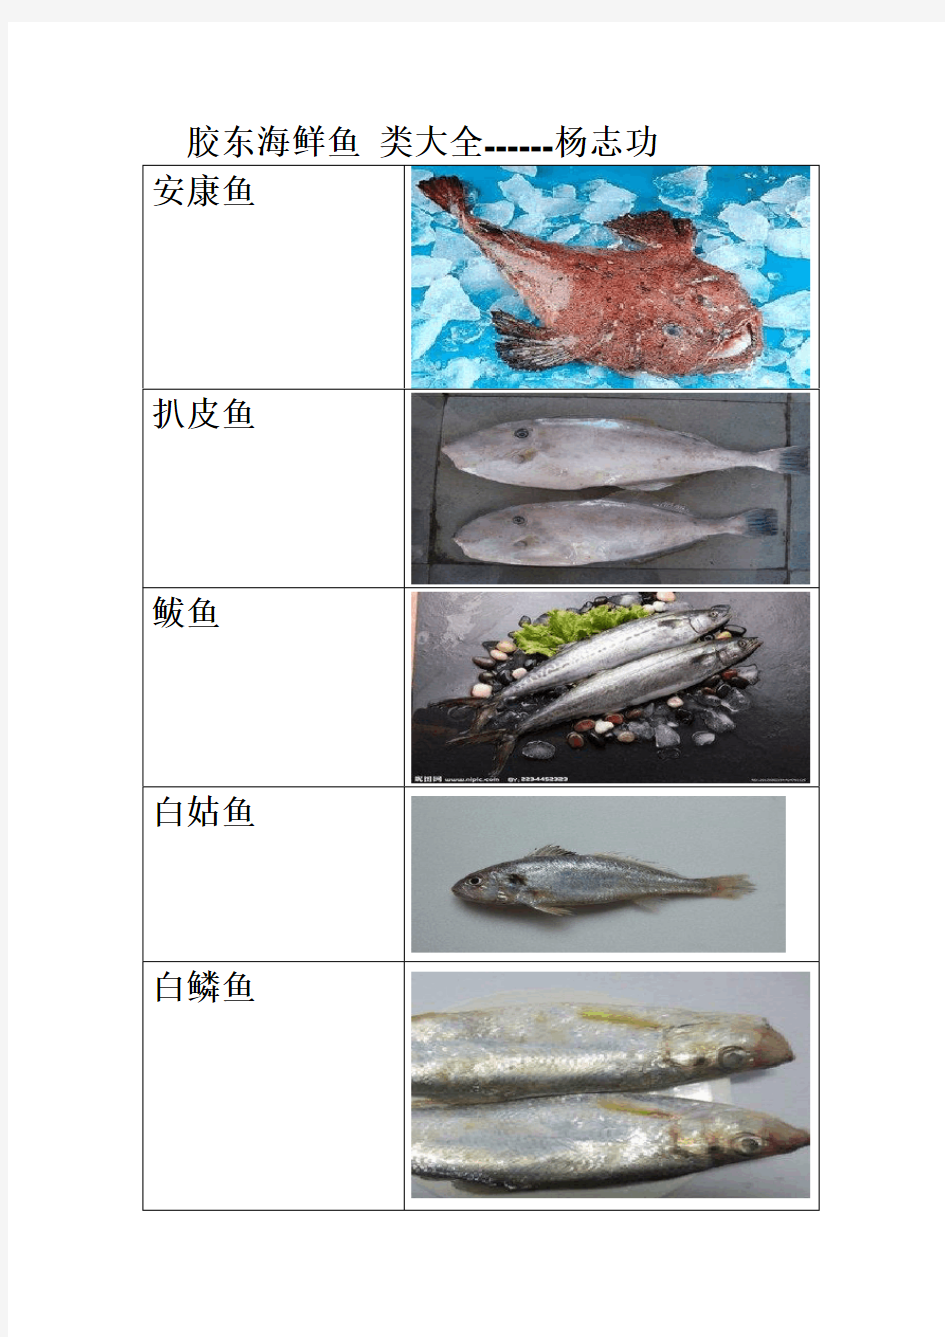 胶东海鲜常见鱼类大全